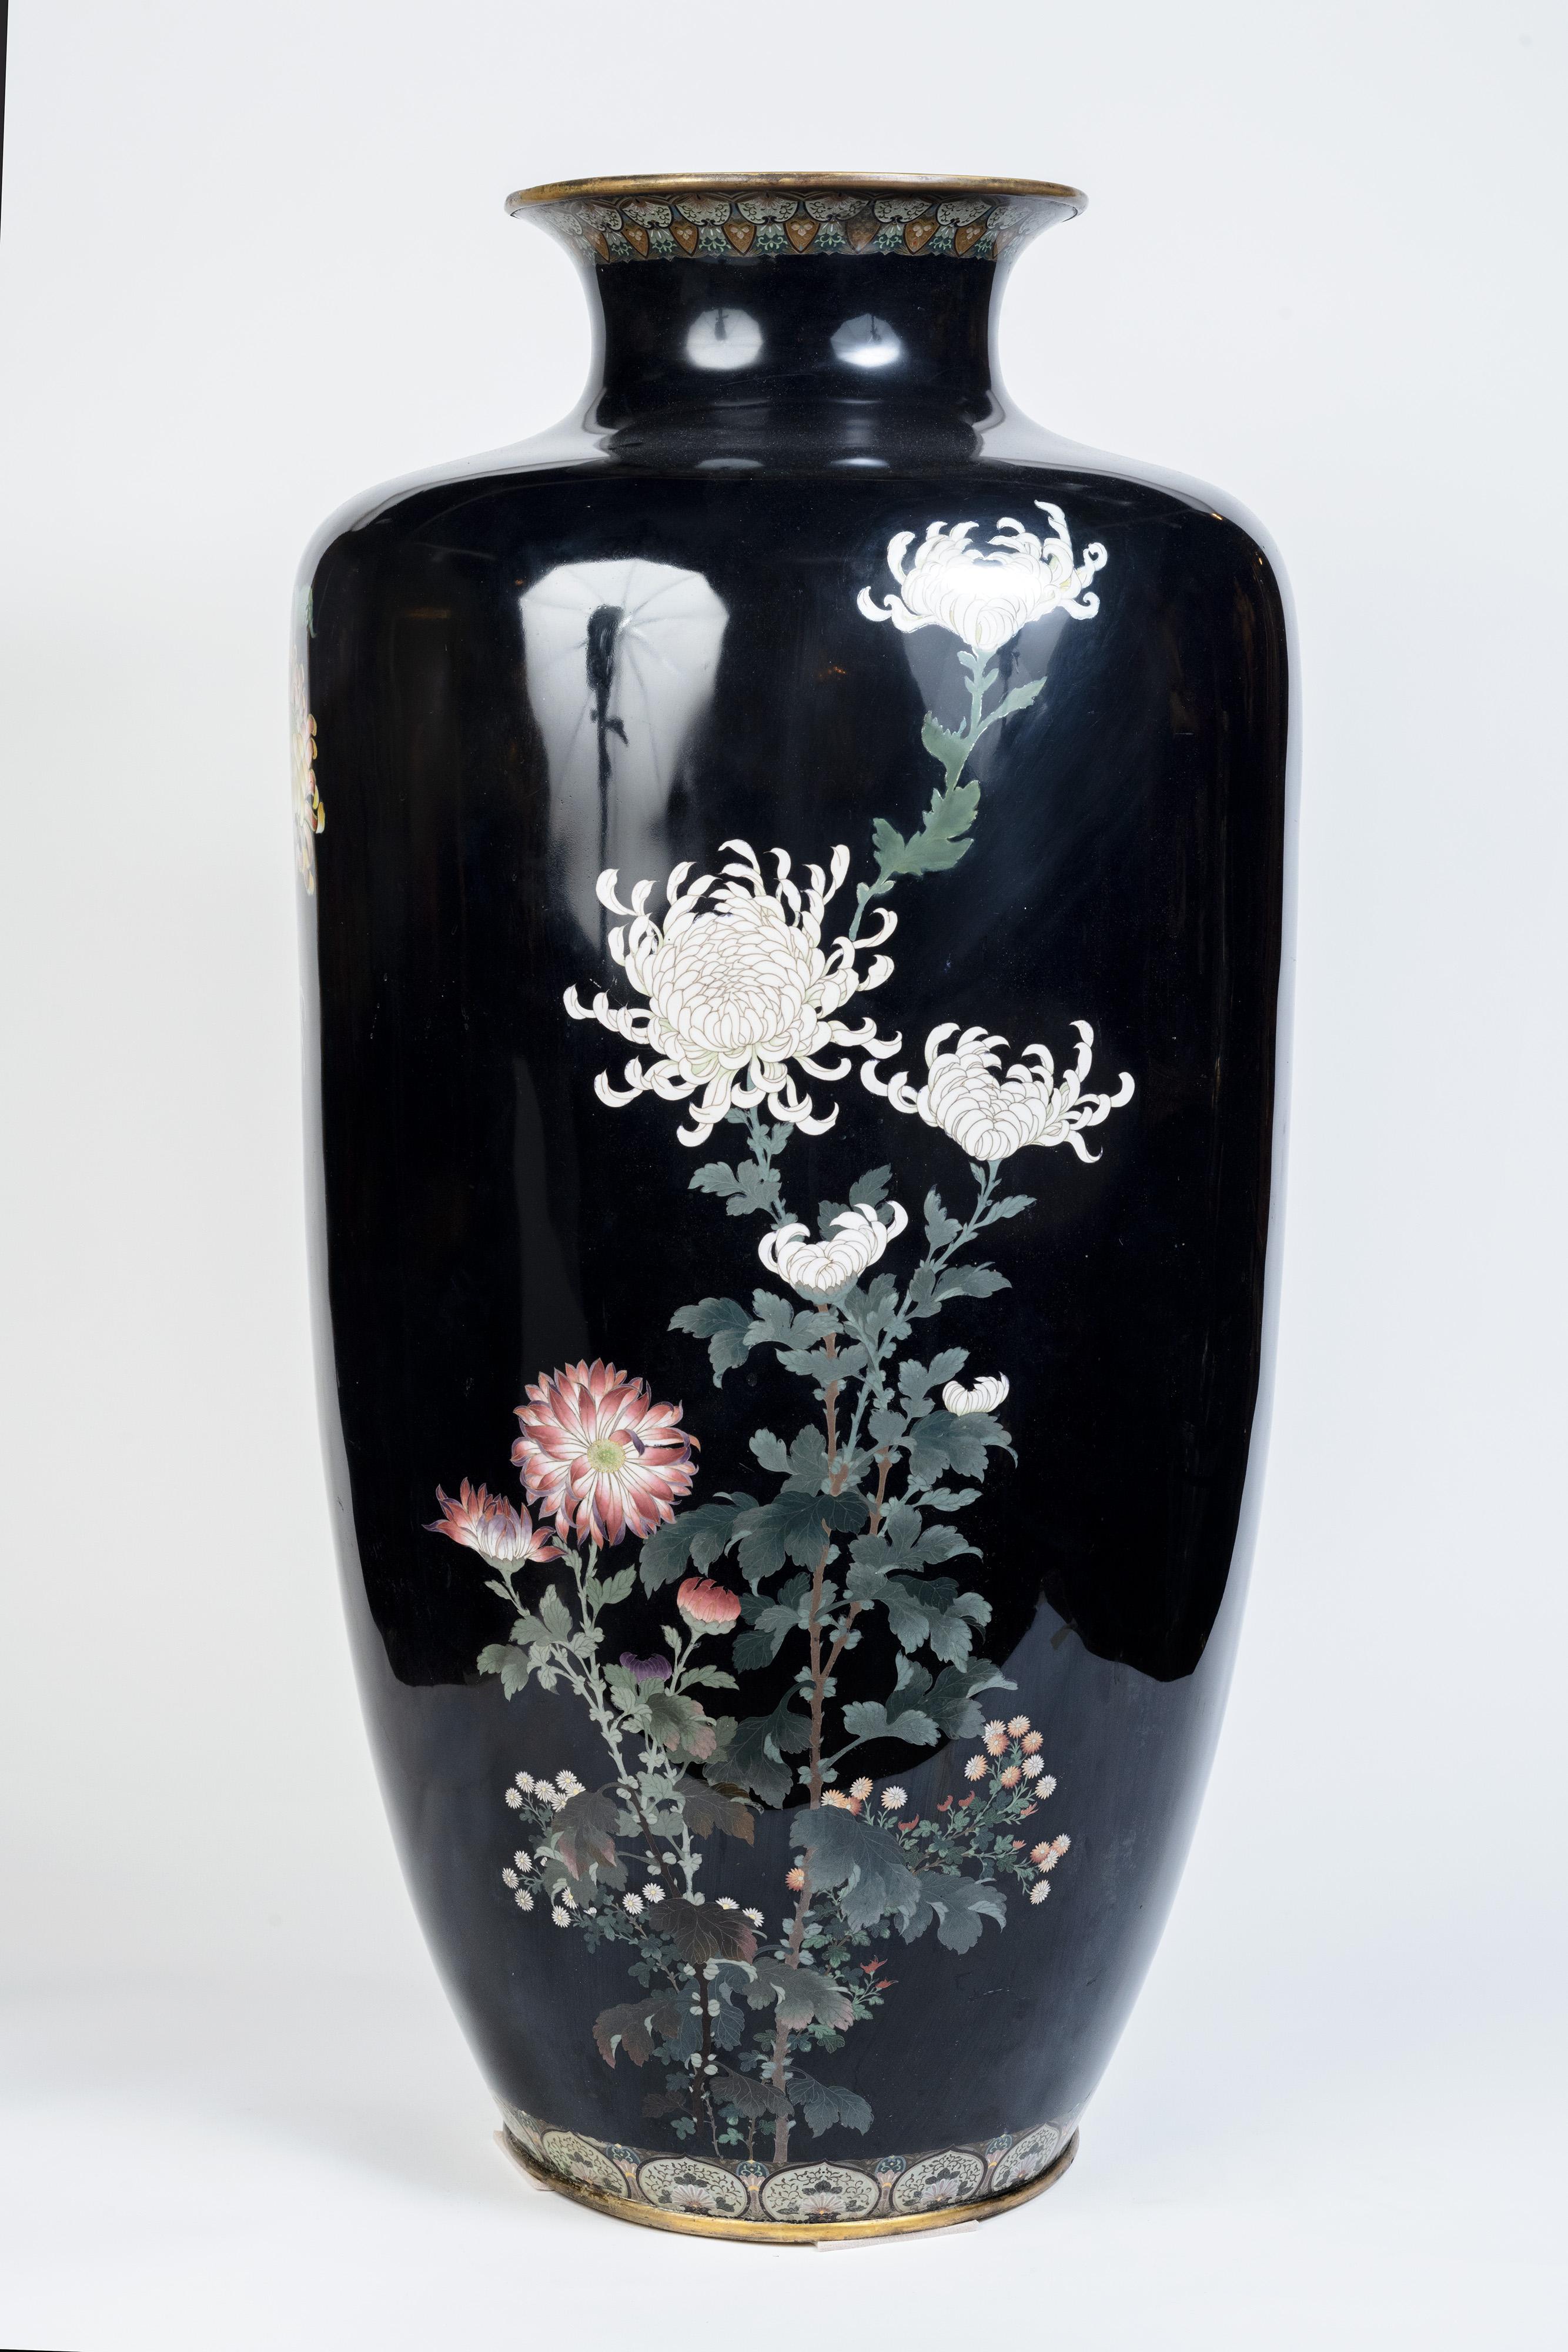  A Monumental Japanese Cloisonne Enamel Vase, Attributed to Hayashi Kodenji

